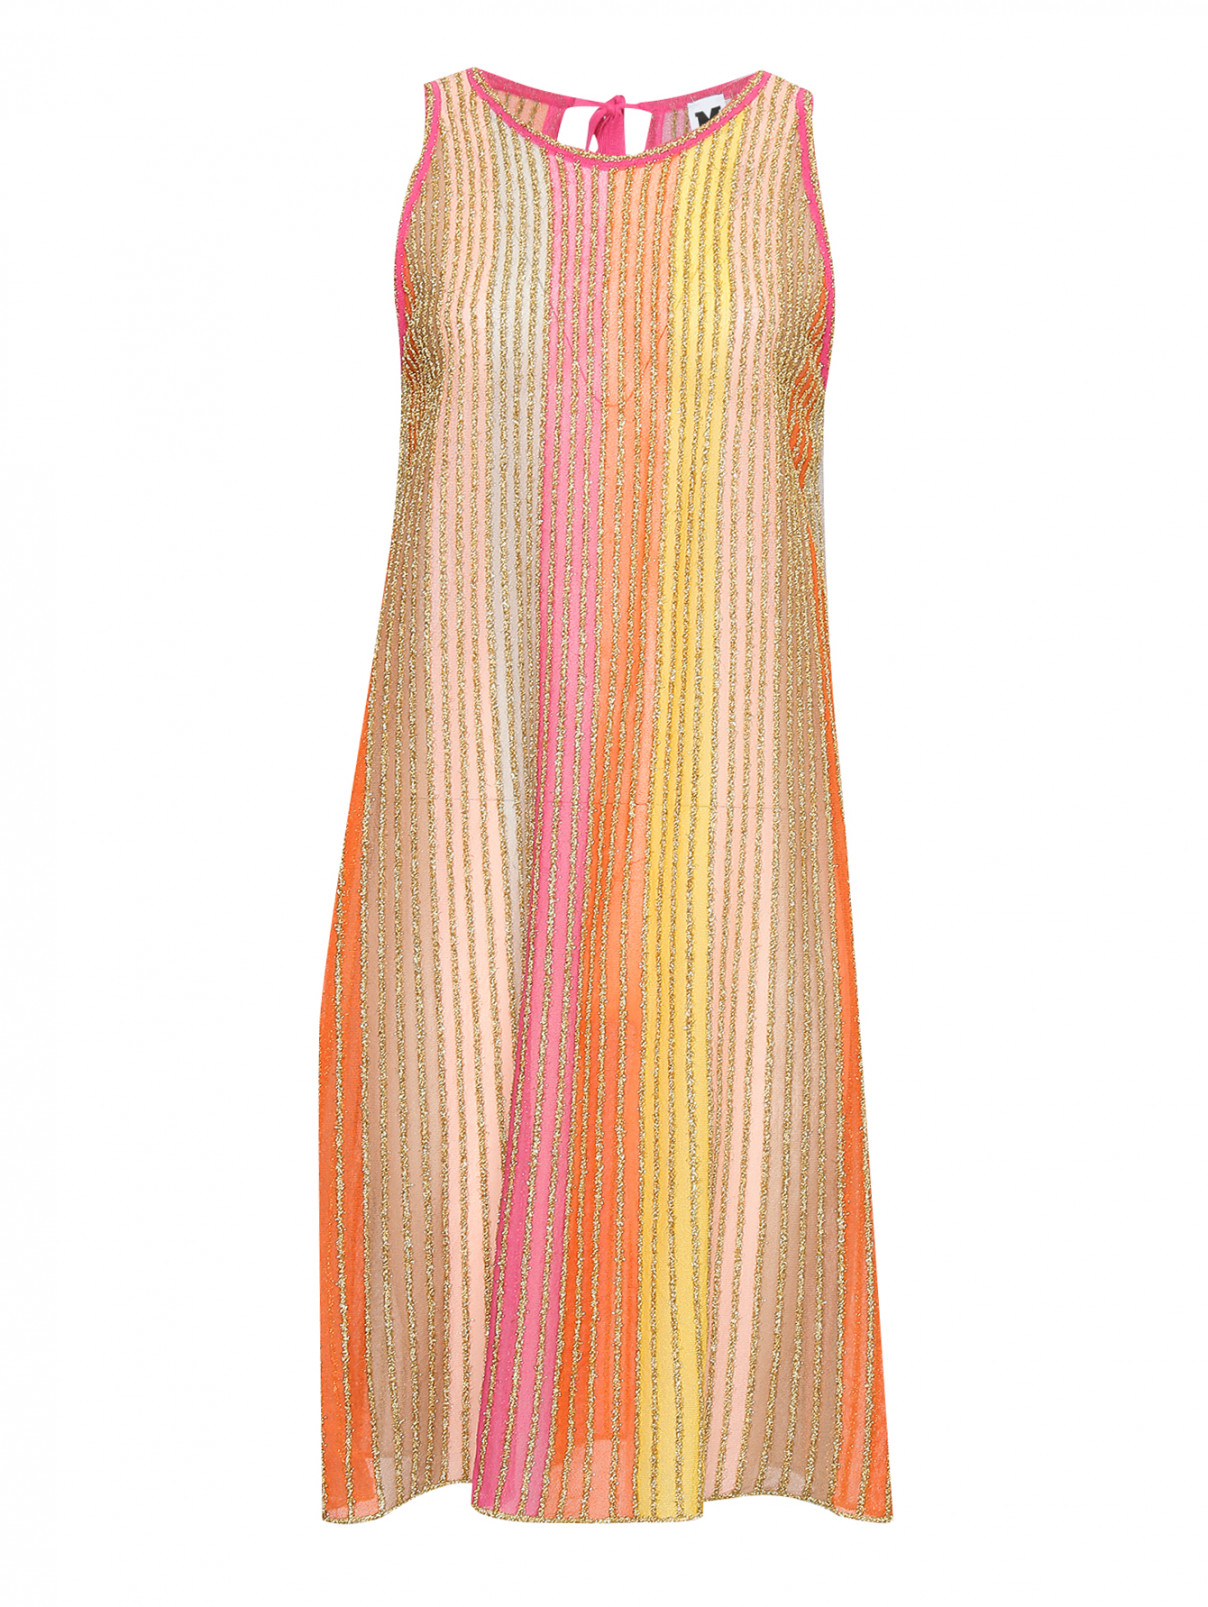 Трикотажное платье с узором полоска M Missoni  –  Общий вид  – Цвет:  Мультиколор